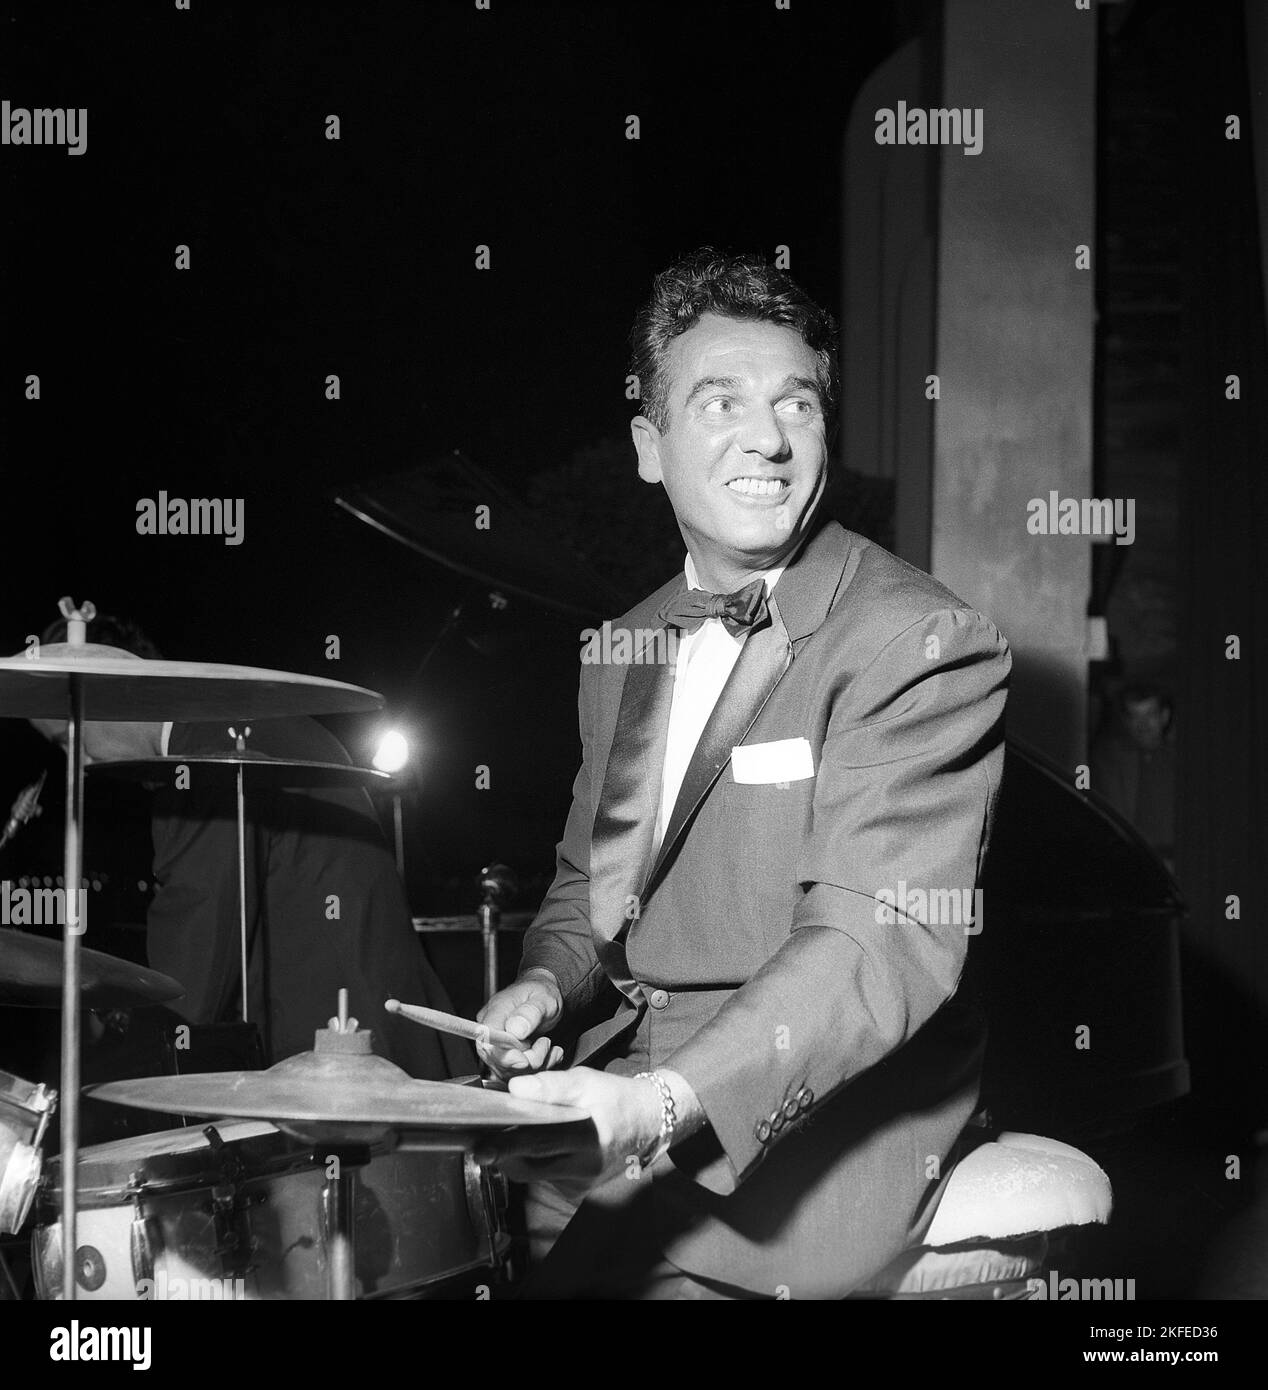 Gene Krupa. Amerikanischer Jazz-Schlagzeuger, Bandleader und Komponist. Geboren am 15 1909. januar, gestorben am 16 1973. oktober. Er war bekannt dafür, mit Energie und Showmanship aufzutreten. Krupa wird vom Modern Drummer Magazine als 'der Gründungsvater des modernen Drumsets' angesehen. Er war der erste Schlagzeuger, der 1978 in die moderne Drummer Hall of Fame aufgenommen wurde. Abgebildet während der Aufführung von i Stockholm Schweden im Juli 1952 Conard Ref 2073 Stockfoto